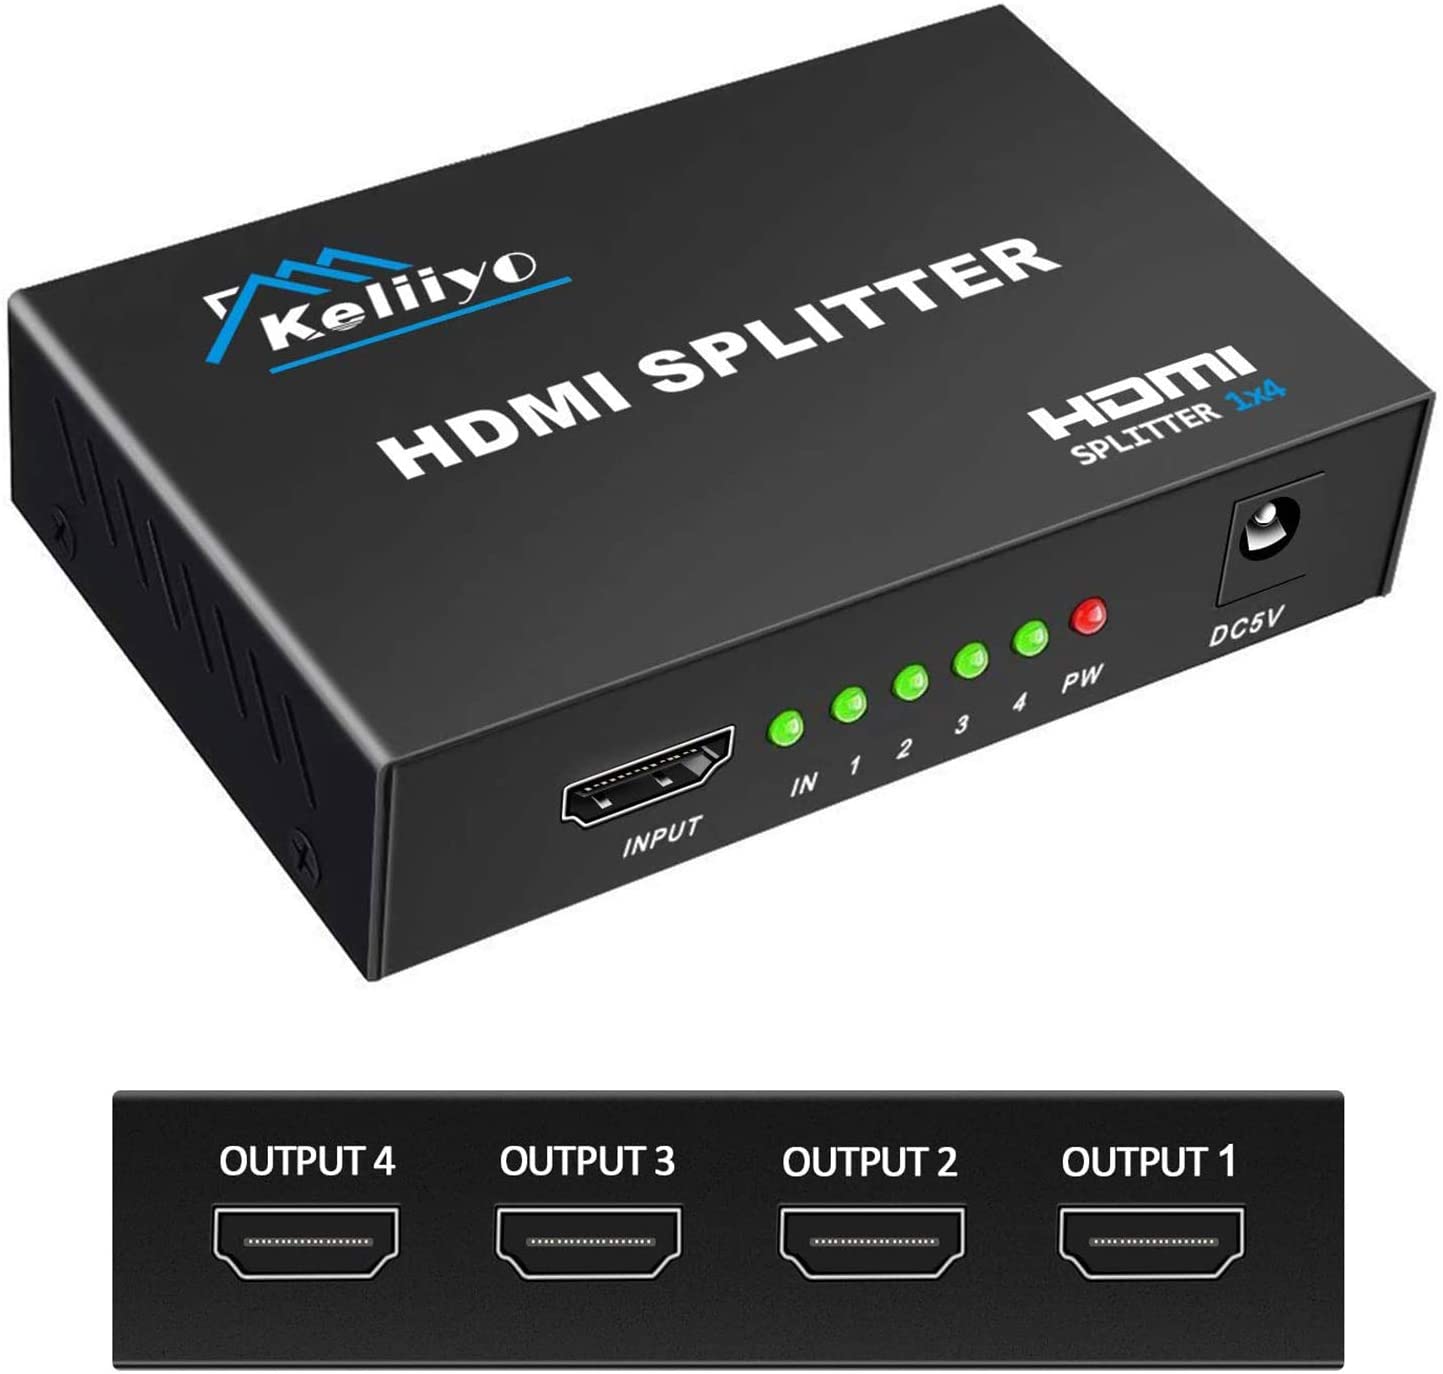 KELIIYO HDMI Video Splitter & AC Adapter, 1 In 4 Out